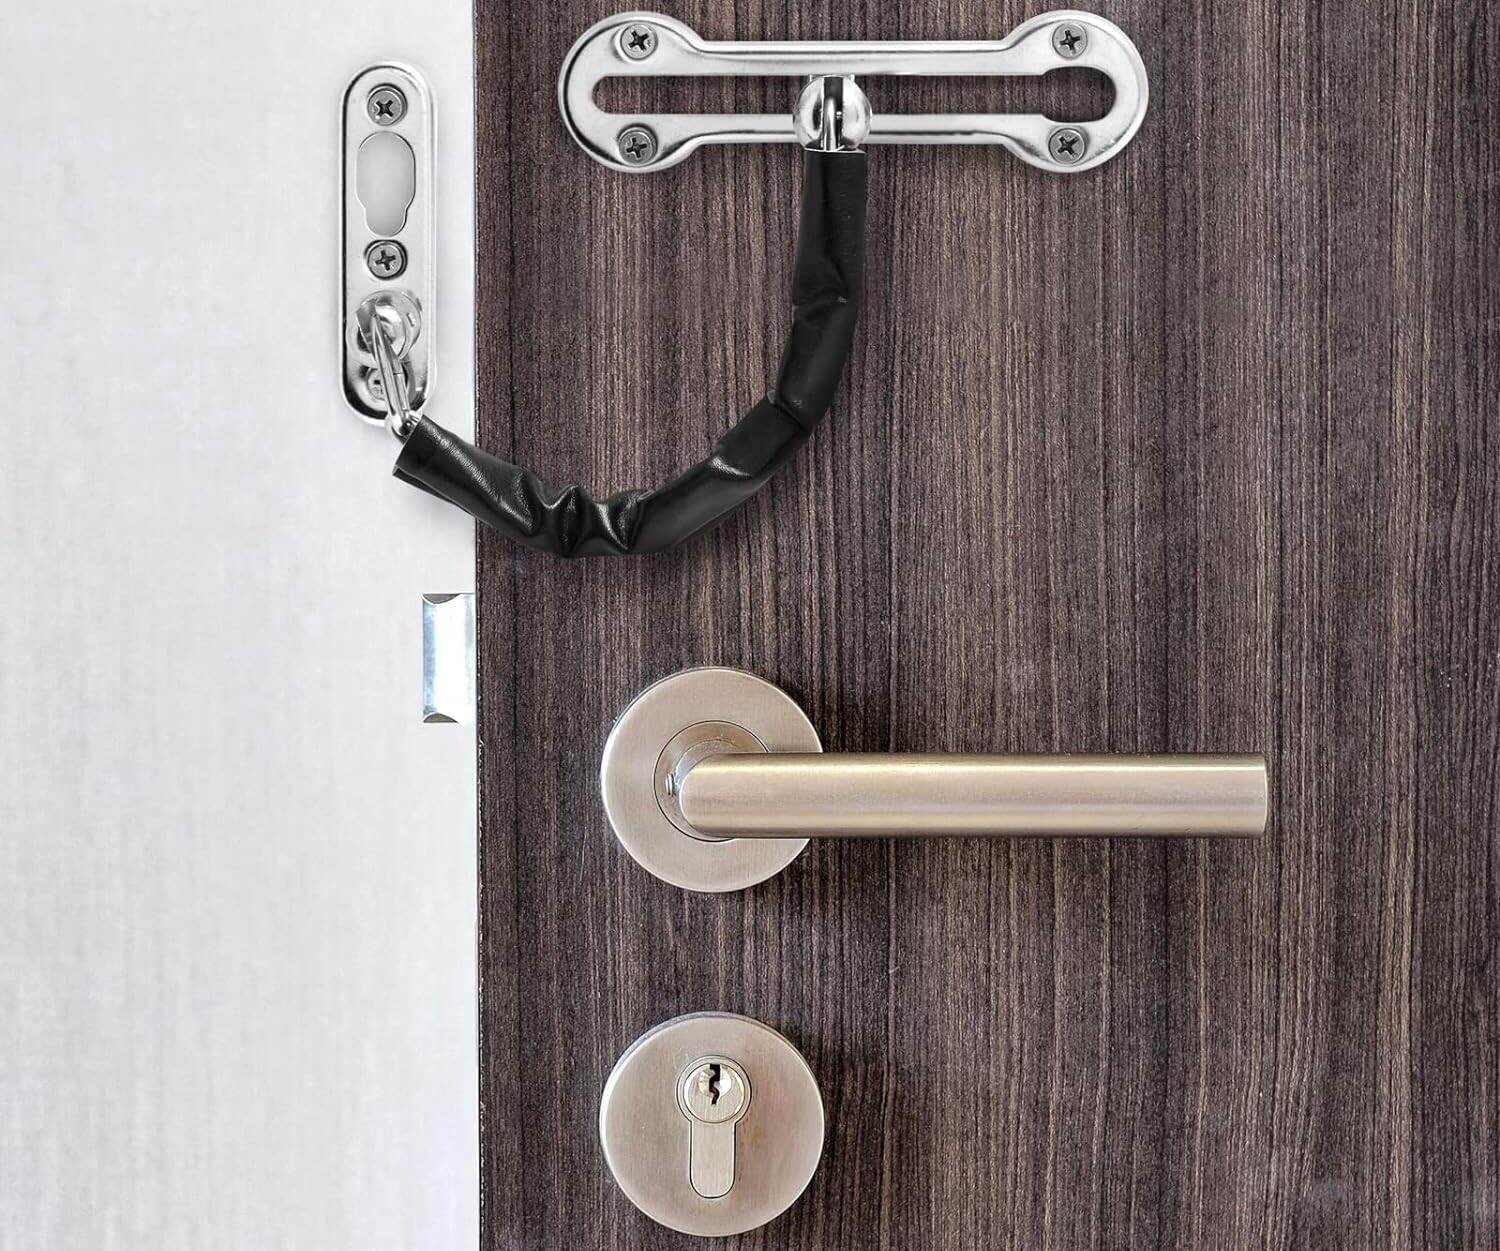 What Type Of Door Lock Do I Have